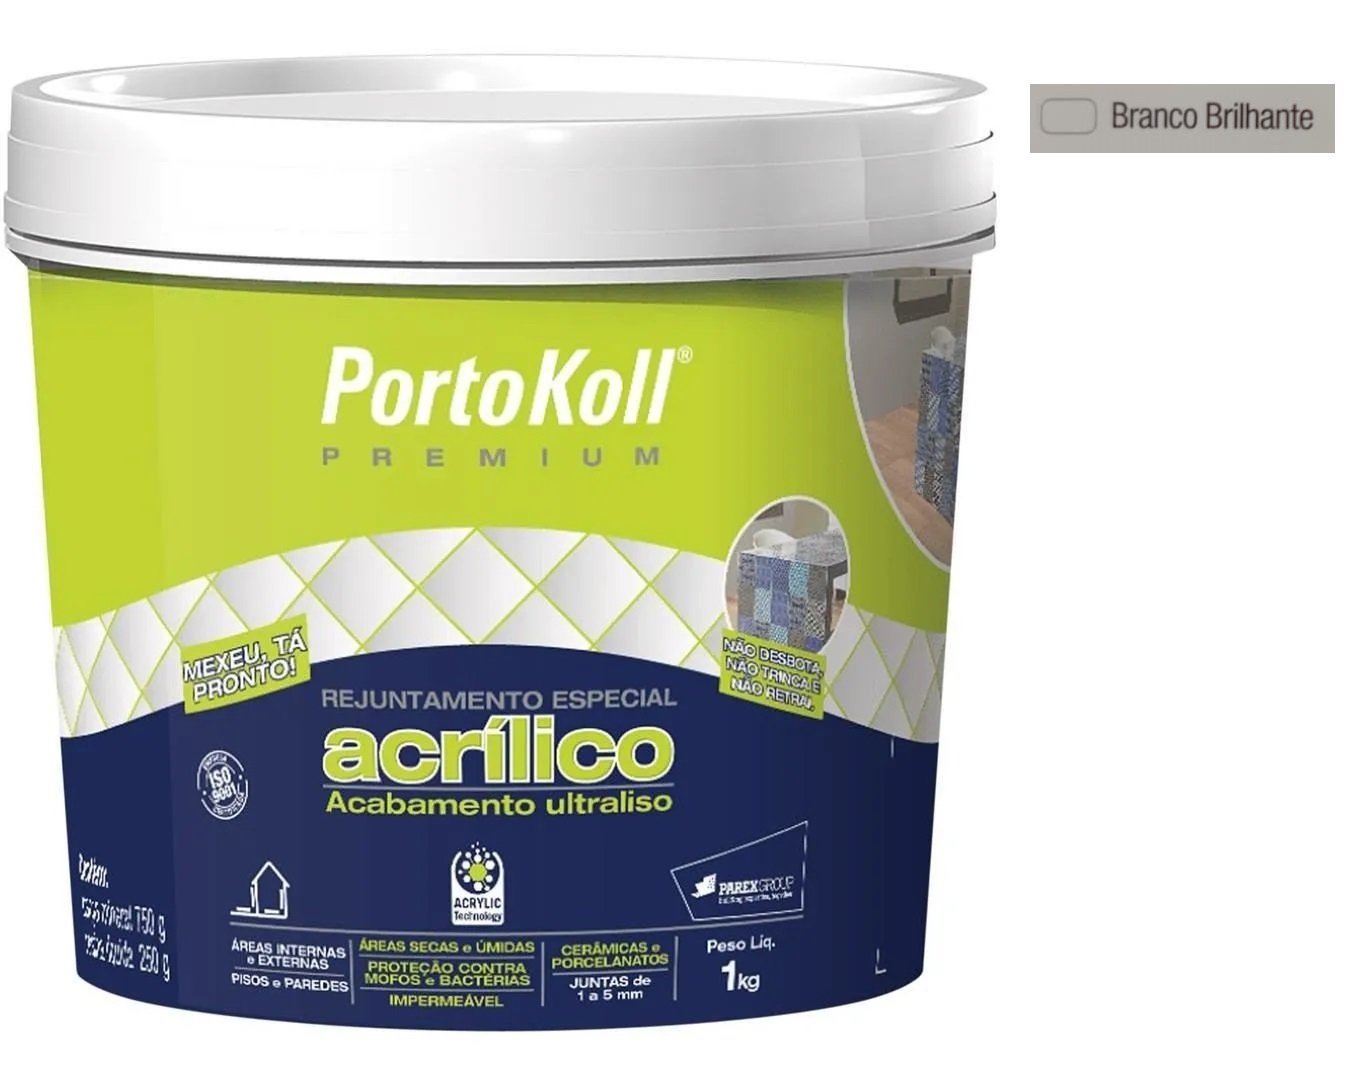 Rejunte Acrílico Portokoll Premium 1kg - BRANCO BRILHANTE